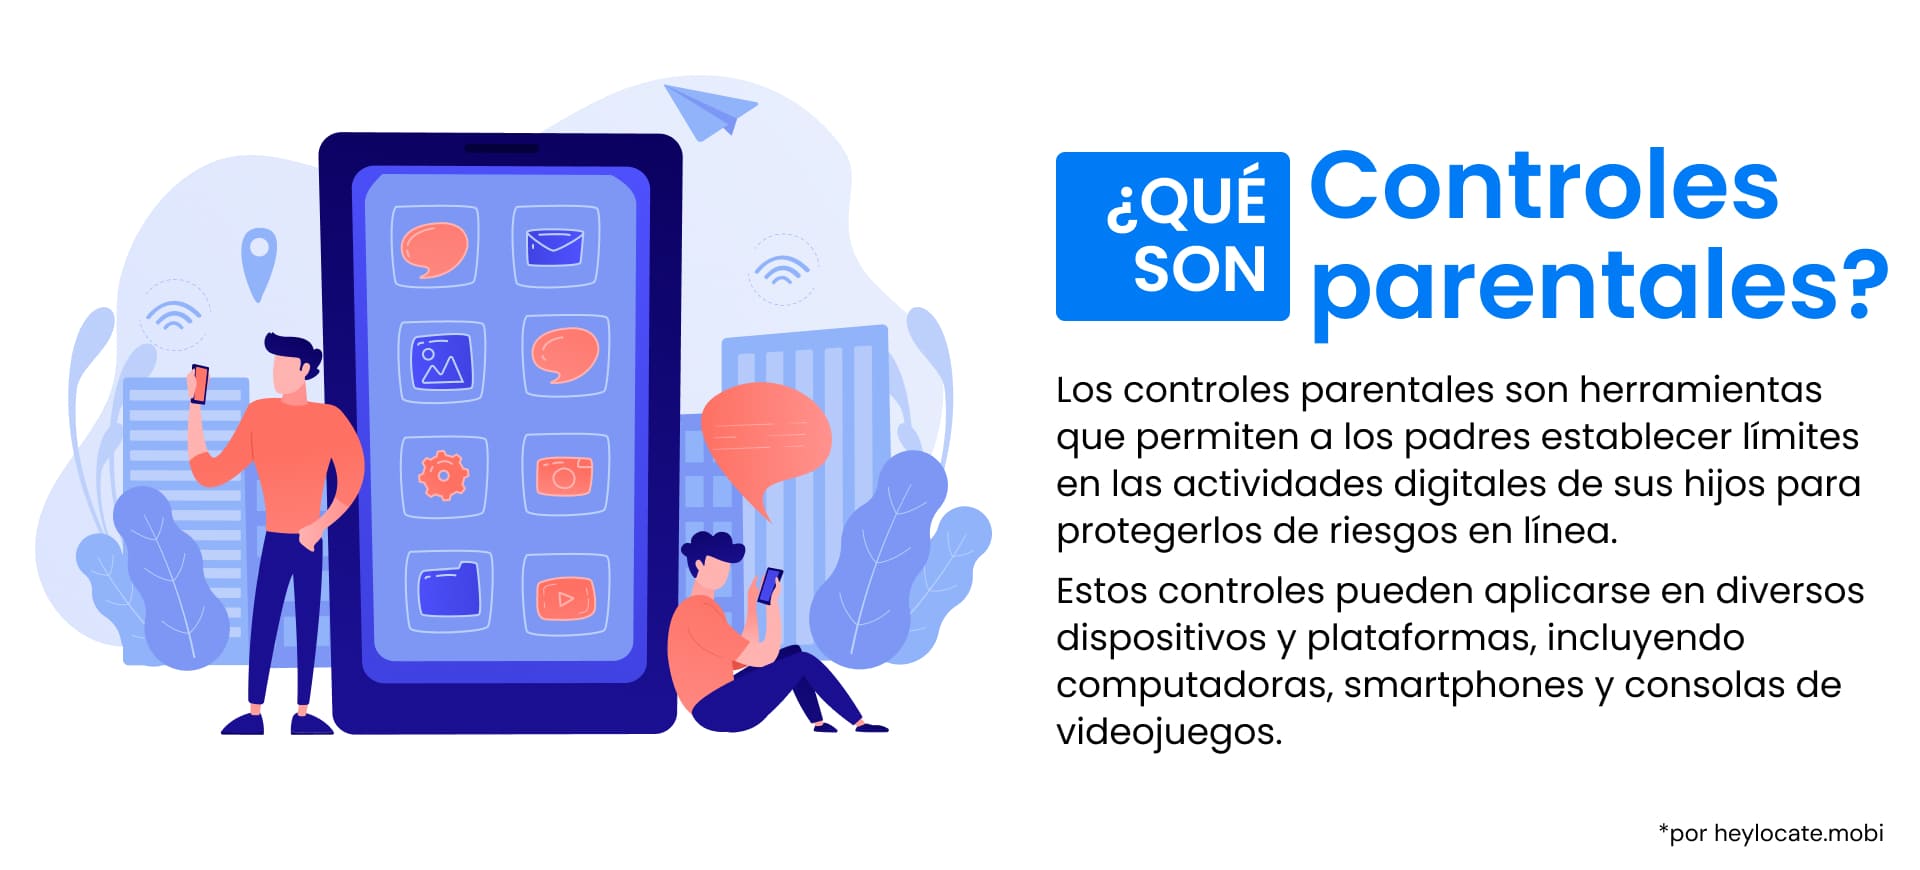 Infografía en la que se define el control parental con ilustraciones de un padre y un hijo utilizando dispositivos con ajustes de control.